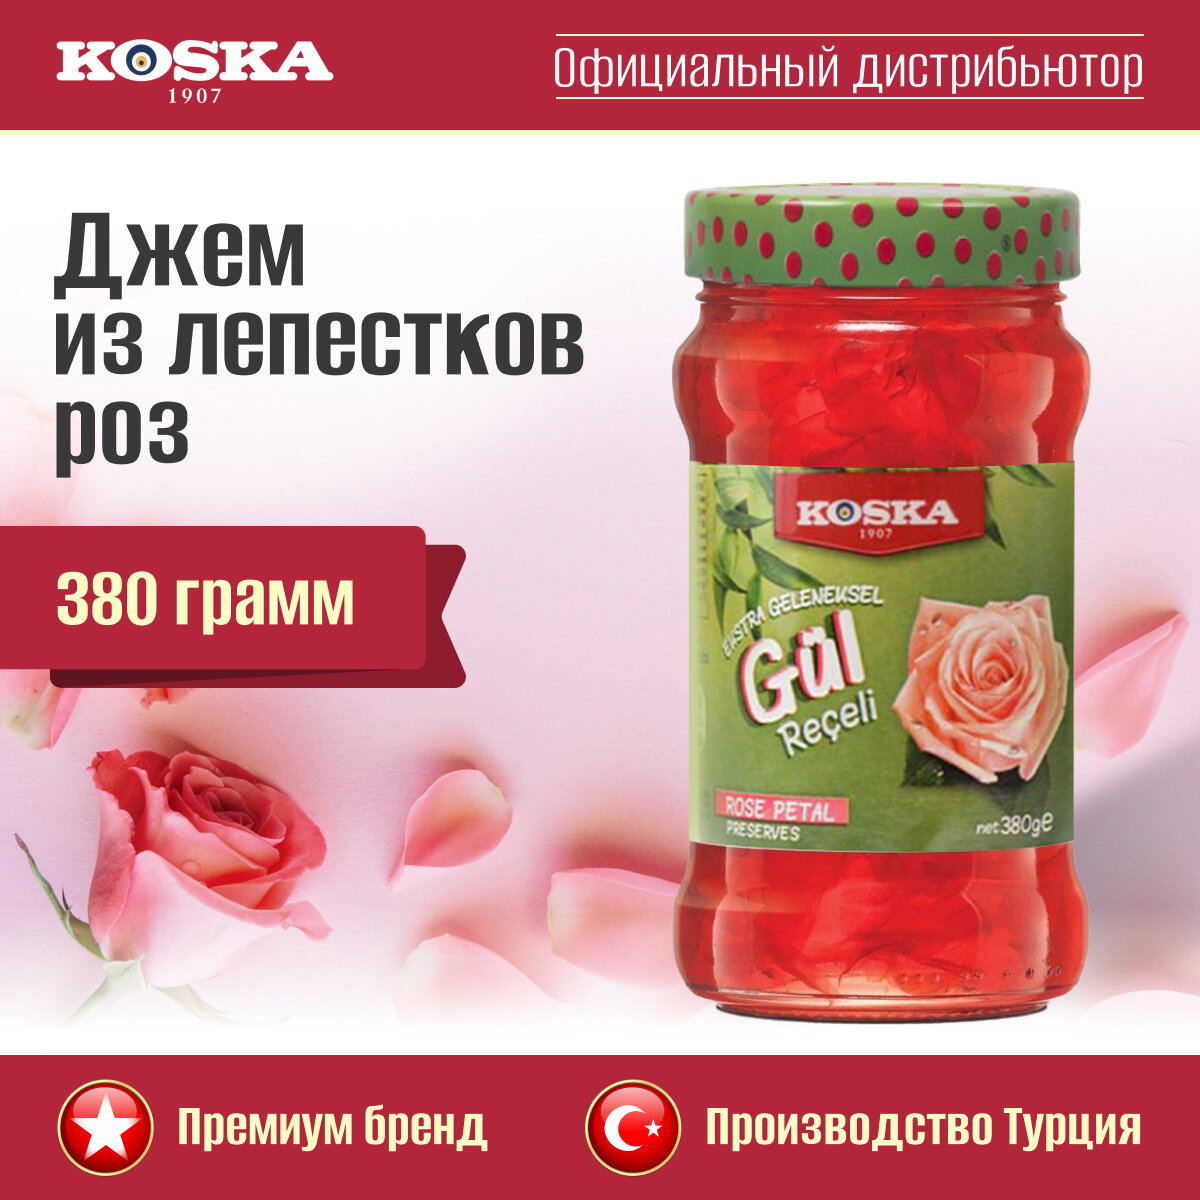 Варенье традиционное из лепестков роз (экстра), Koska, 380 г